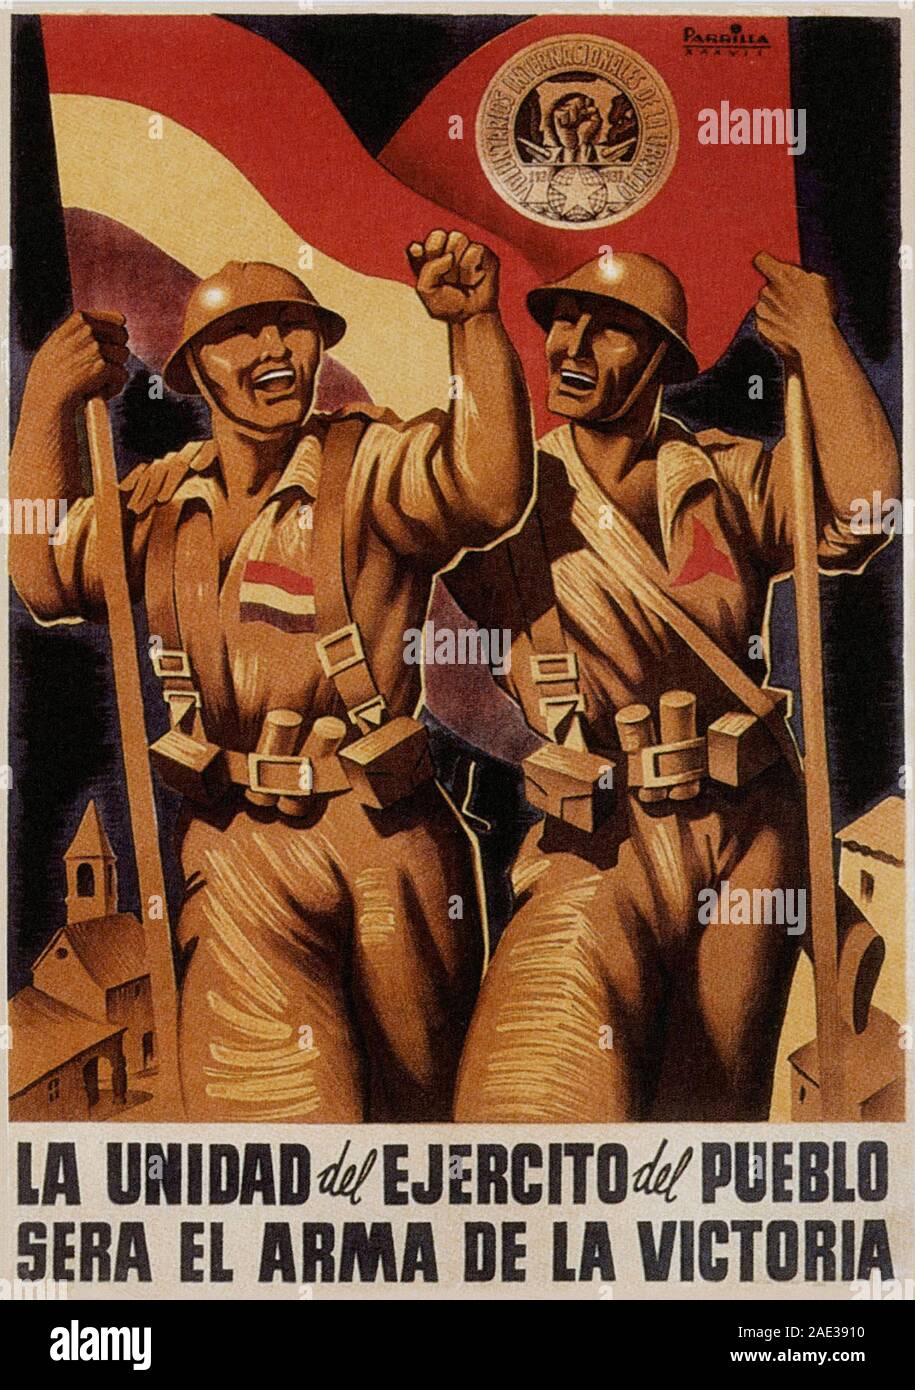 Affiche de Républicains Espagnols dans leur lutte contre une révolte par les nationalistes, une alliance d'Falangists, monarchistes, conservateurs et catholiques Banque D'Images